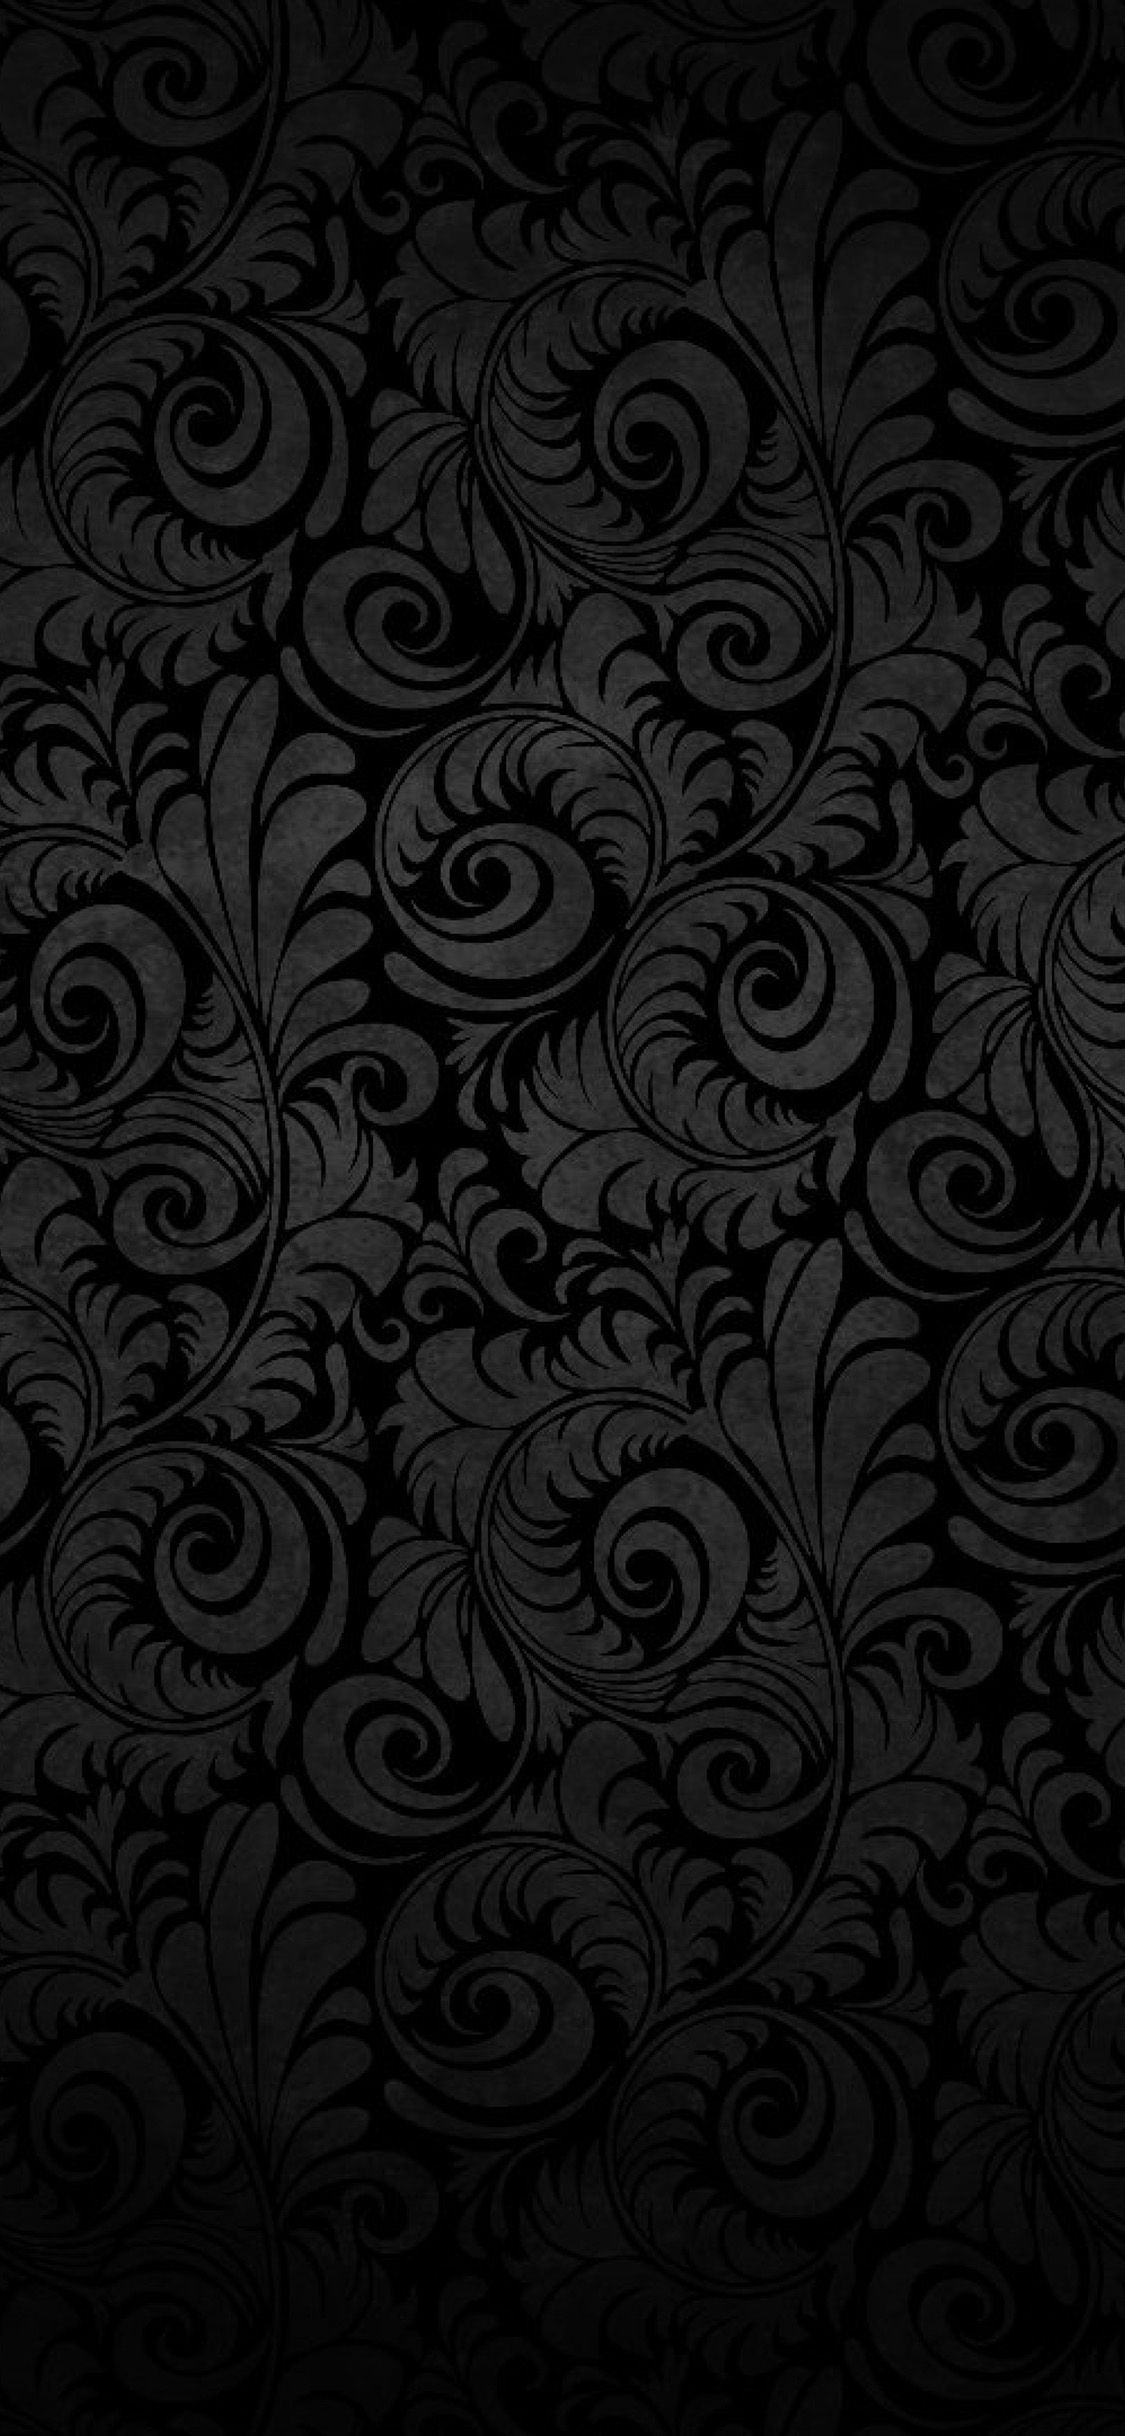 4K Black Wallpapers for Desktop, iPad & iPhone